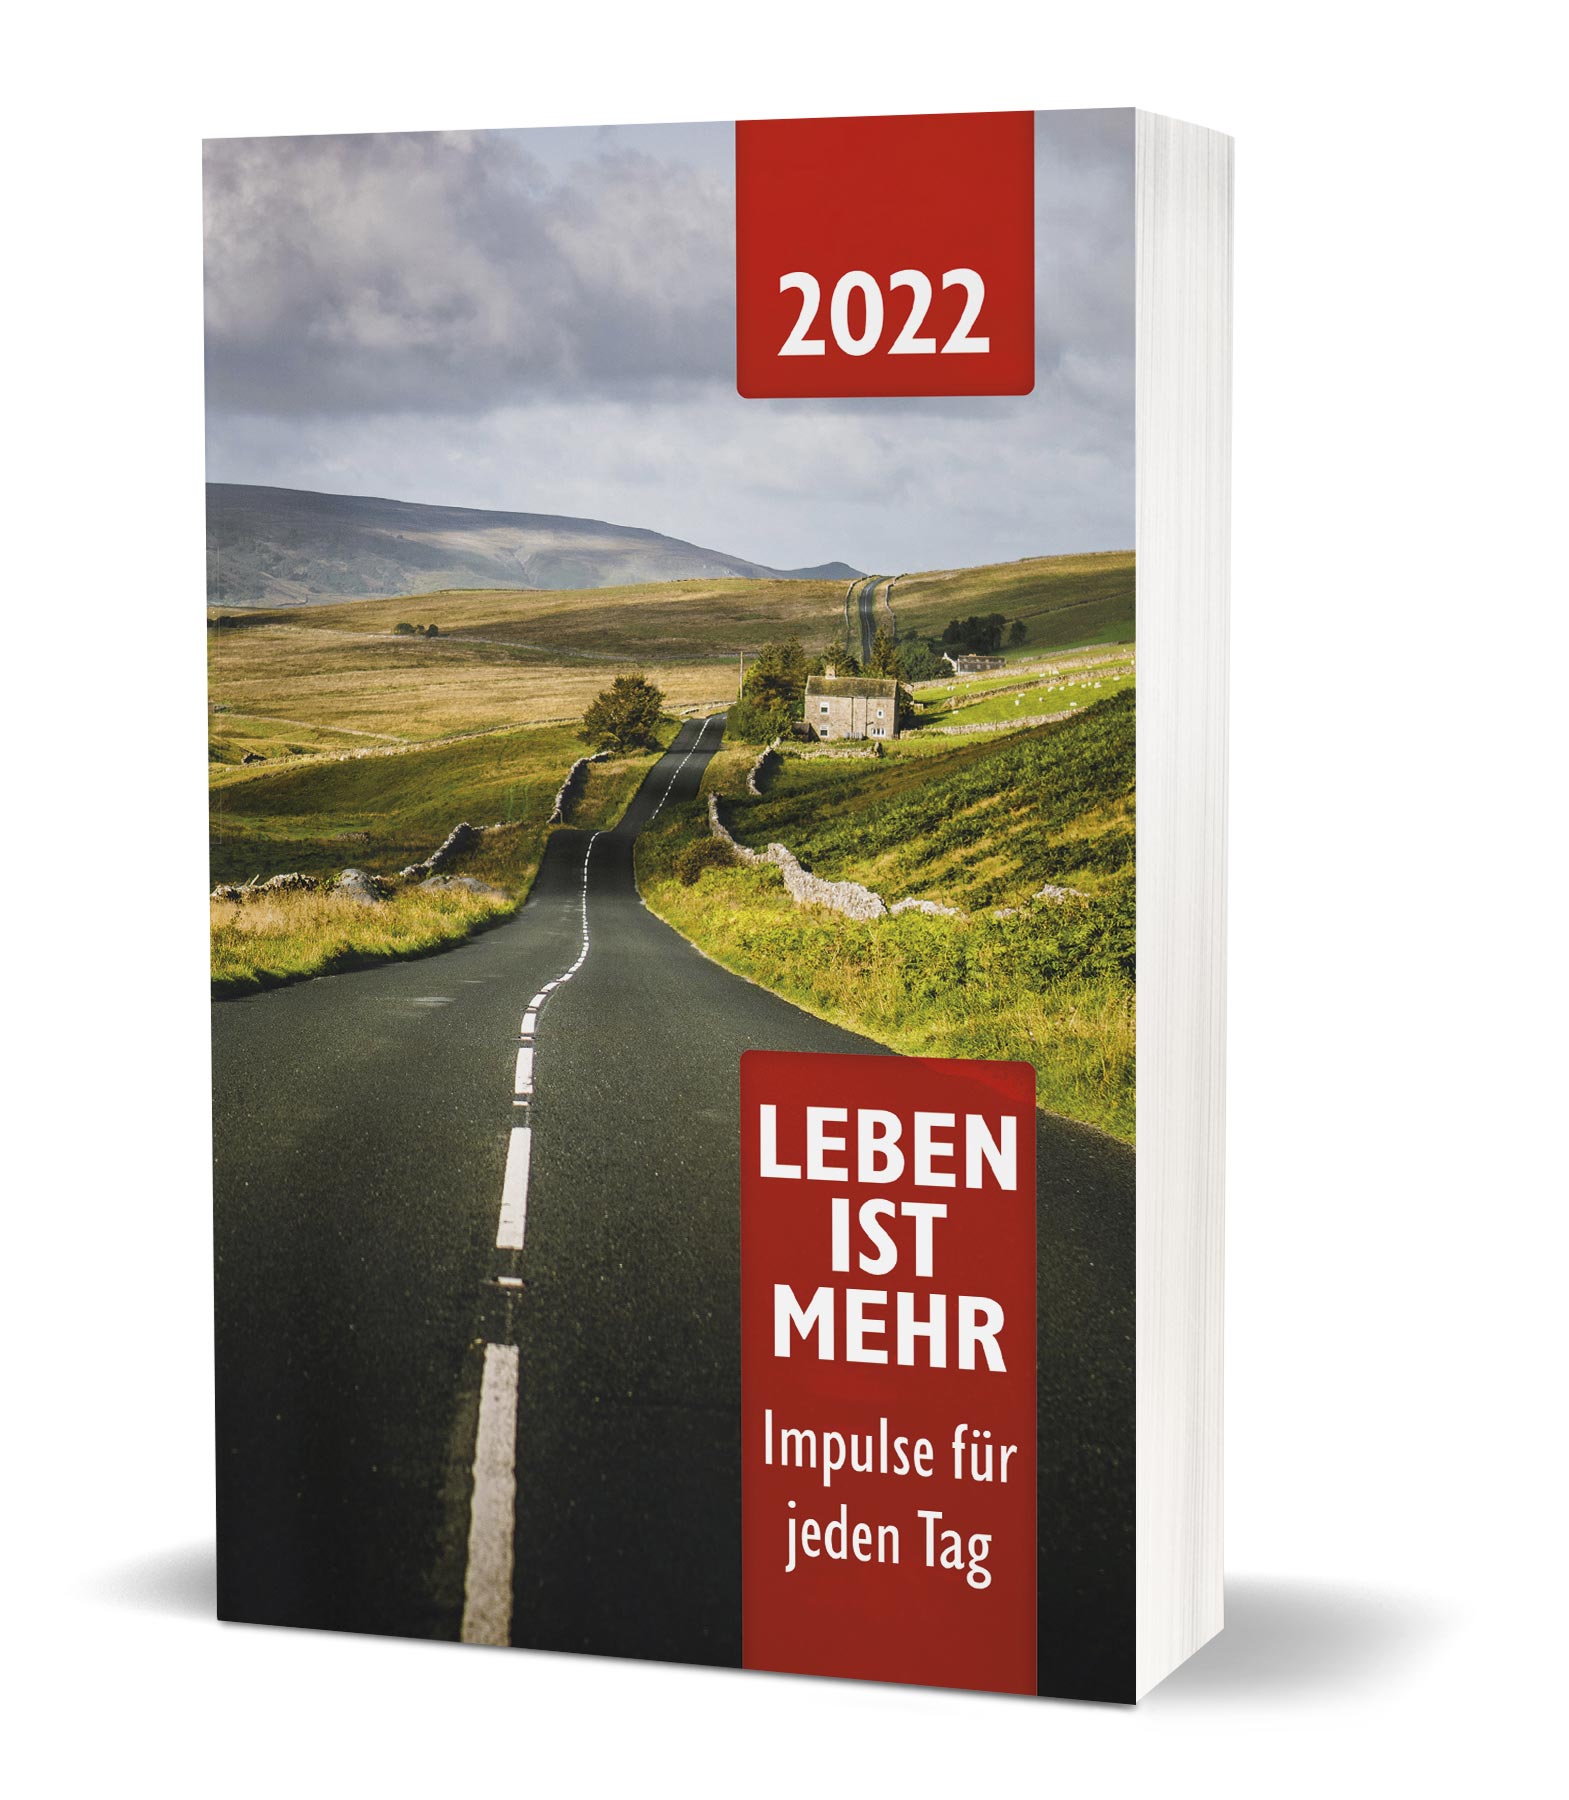 Leben ist mehr 2022 (Paperback) - Impulse für jeden Tag